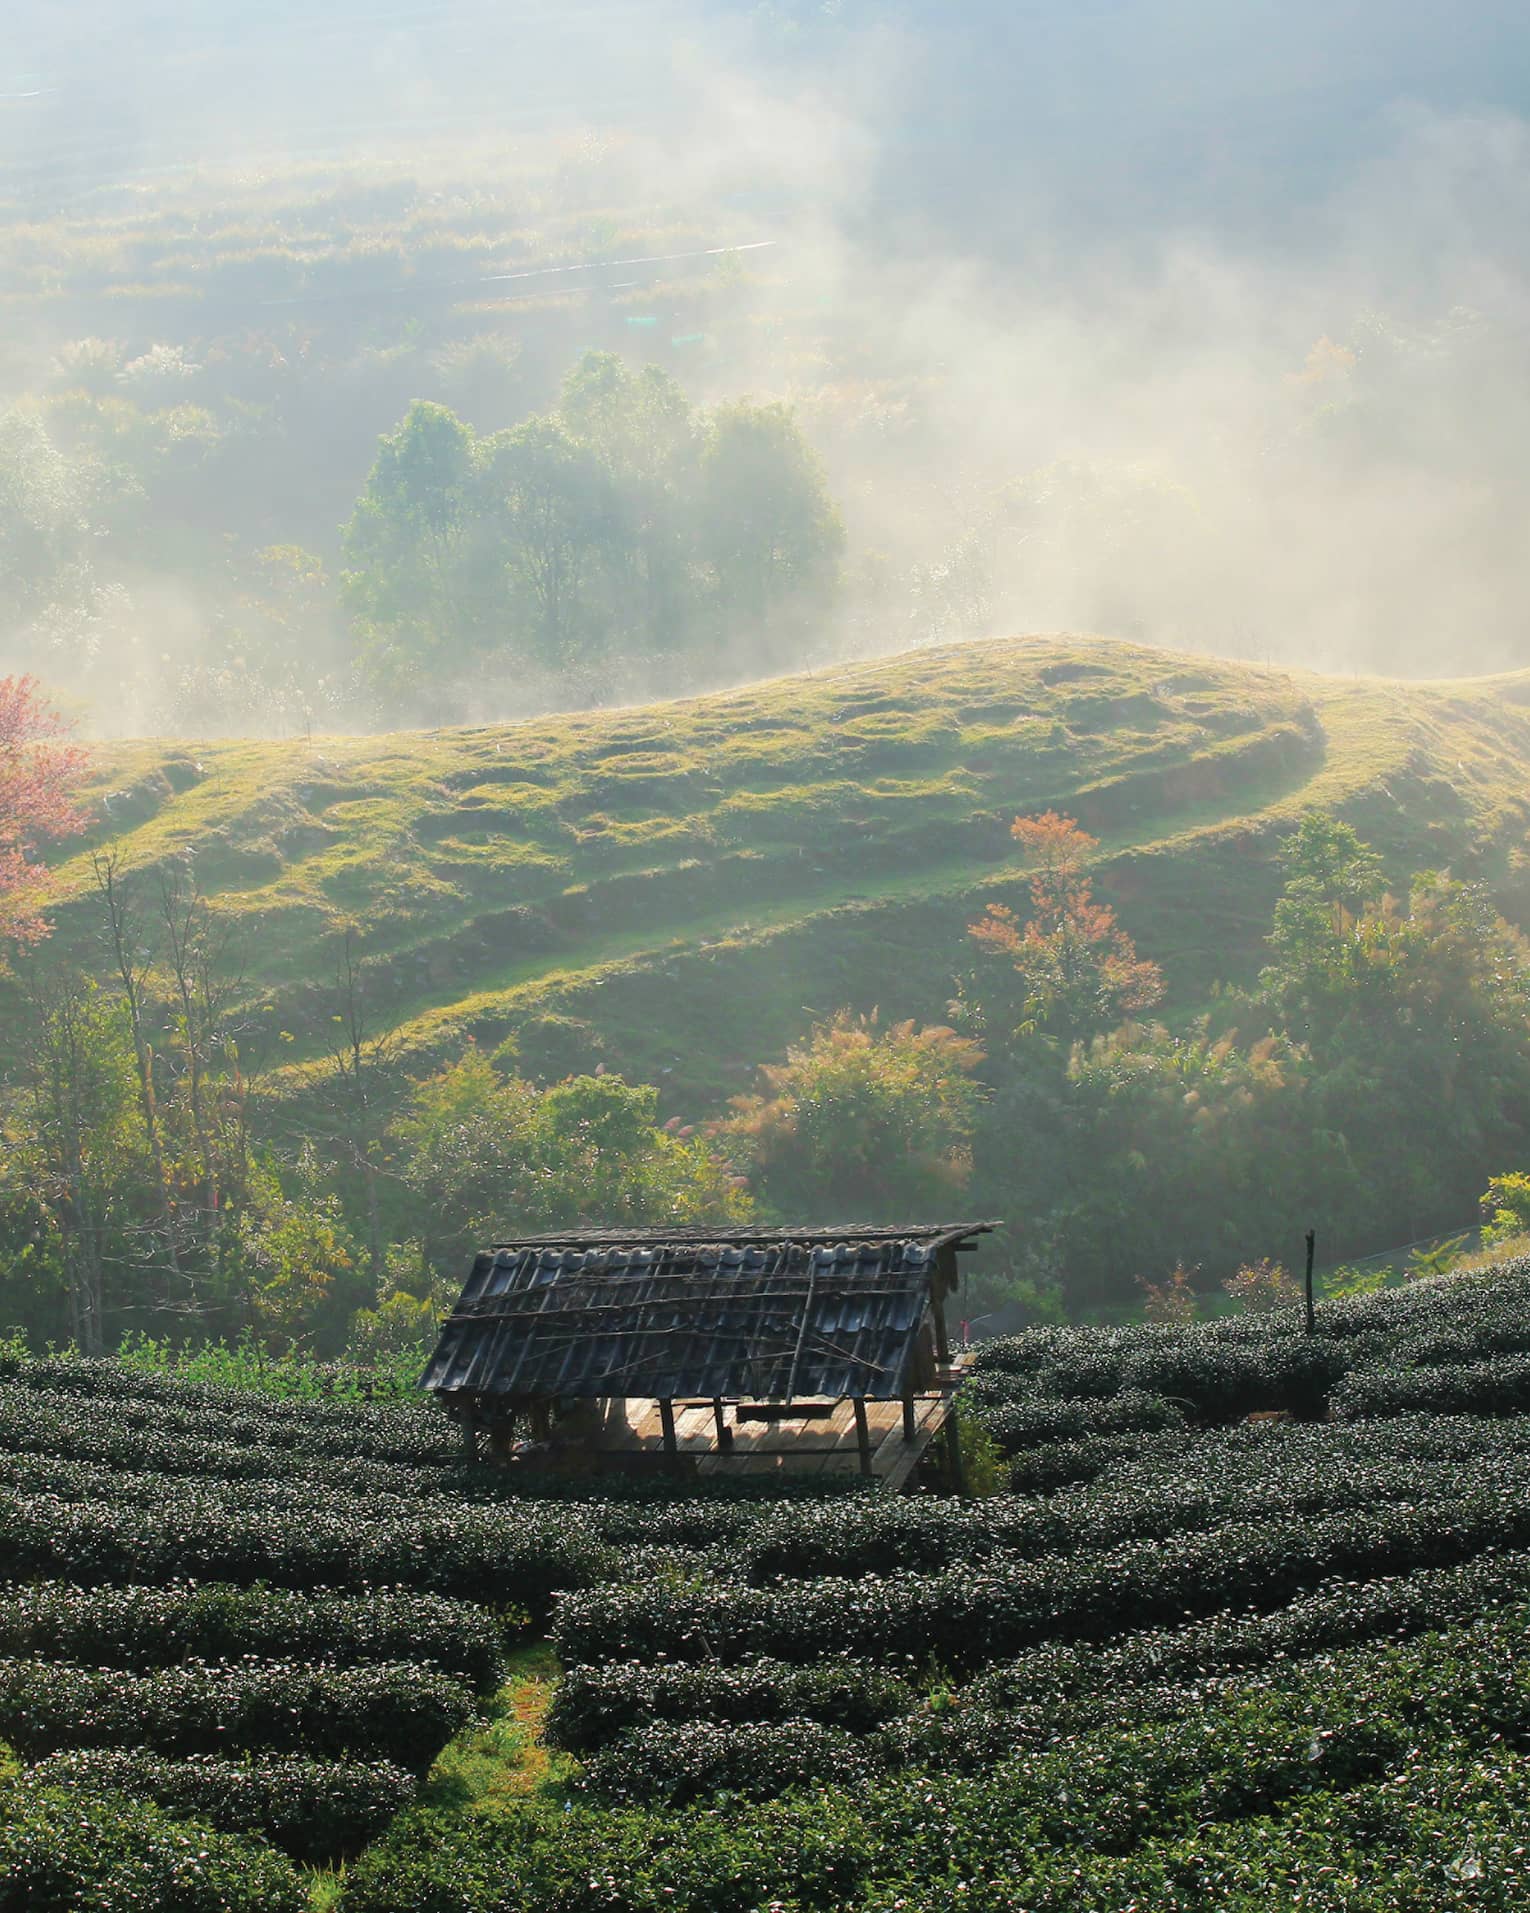 Misty morning over a lush tea garden with a quaint hut.